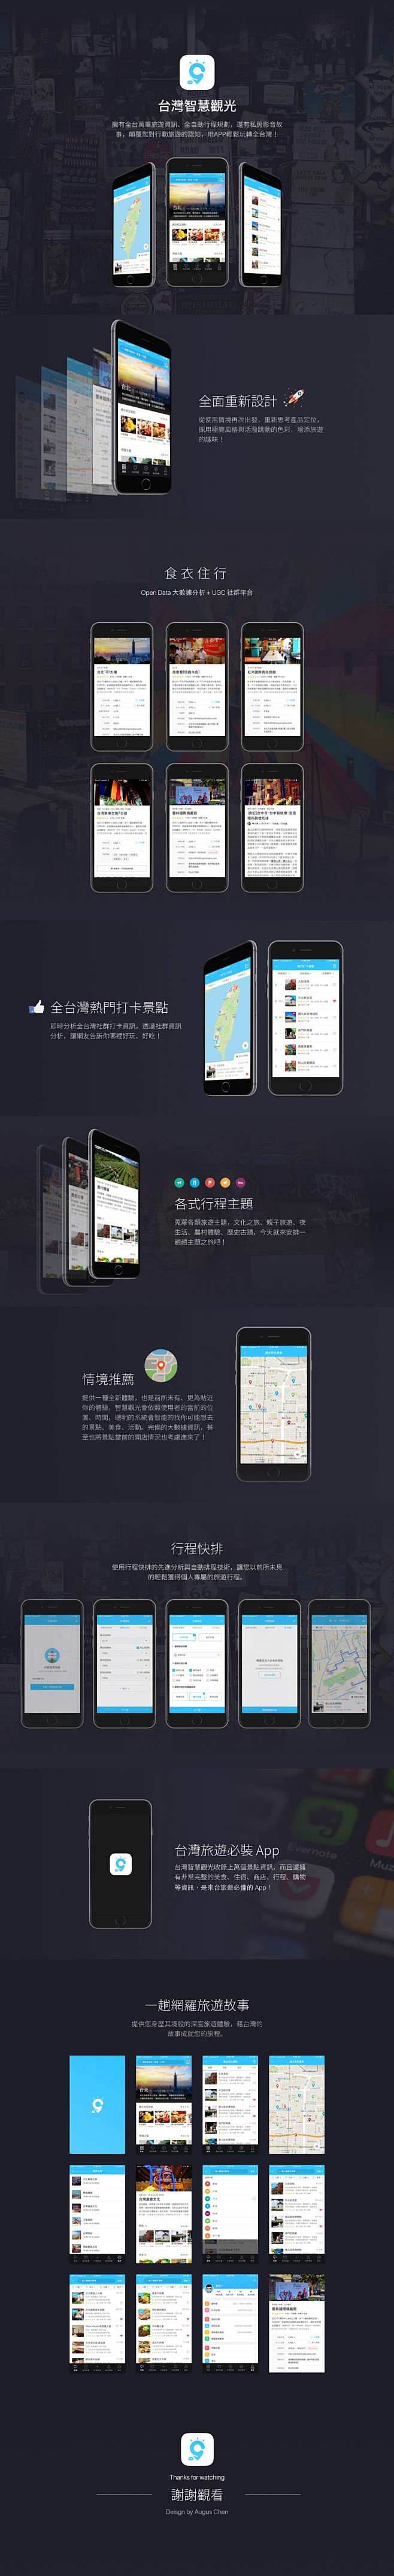 台灣智慧觀光 - App Design ...